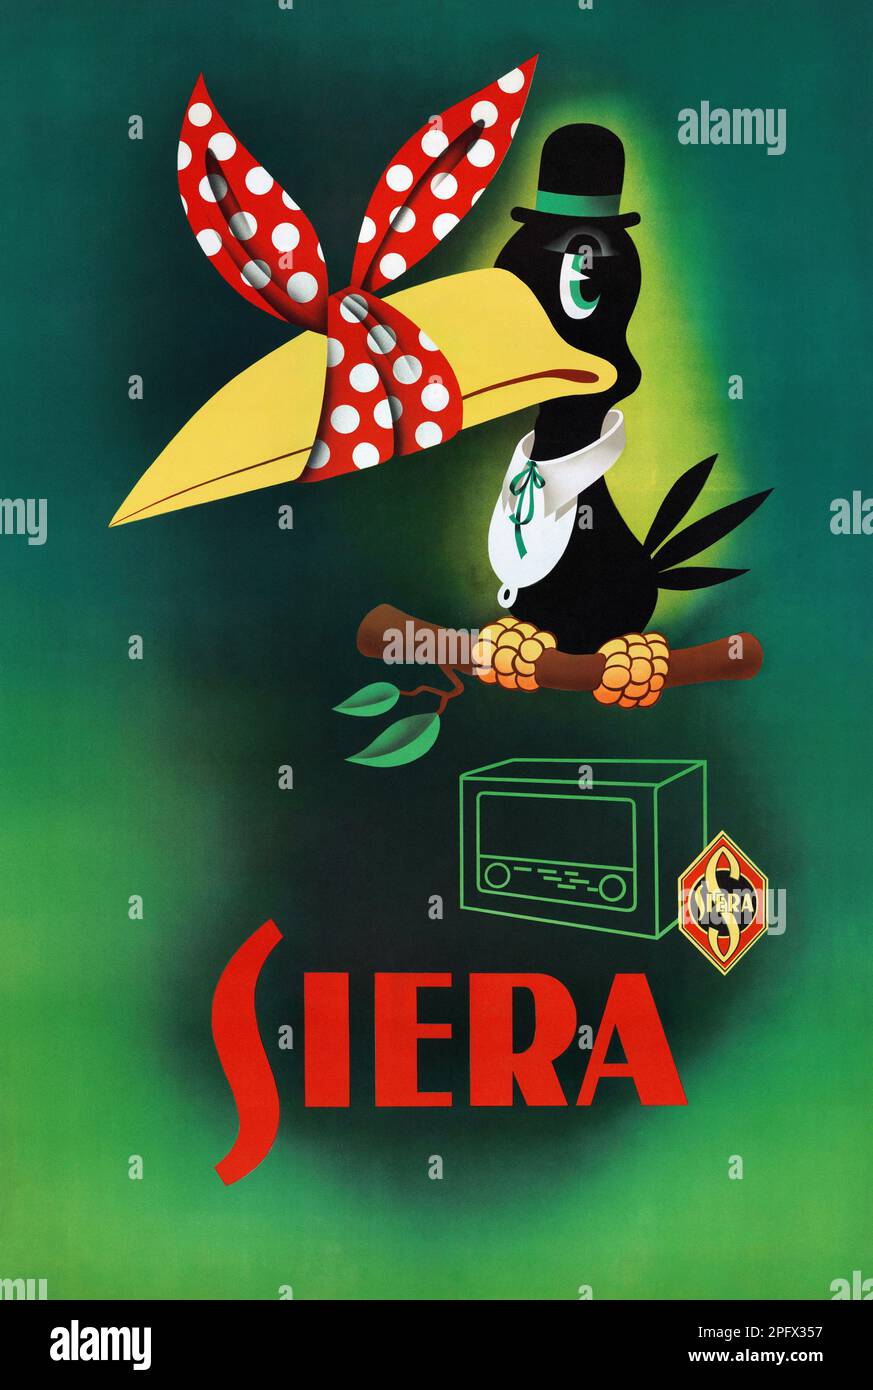 Siera. Artiste inconnu. Affiche publiée ca. 1950s en Belgique. Banque D'Images